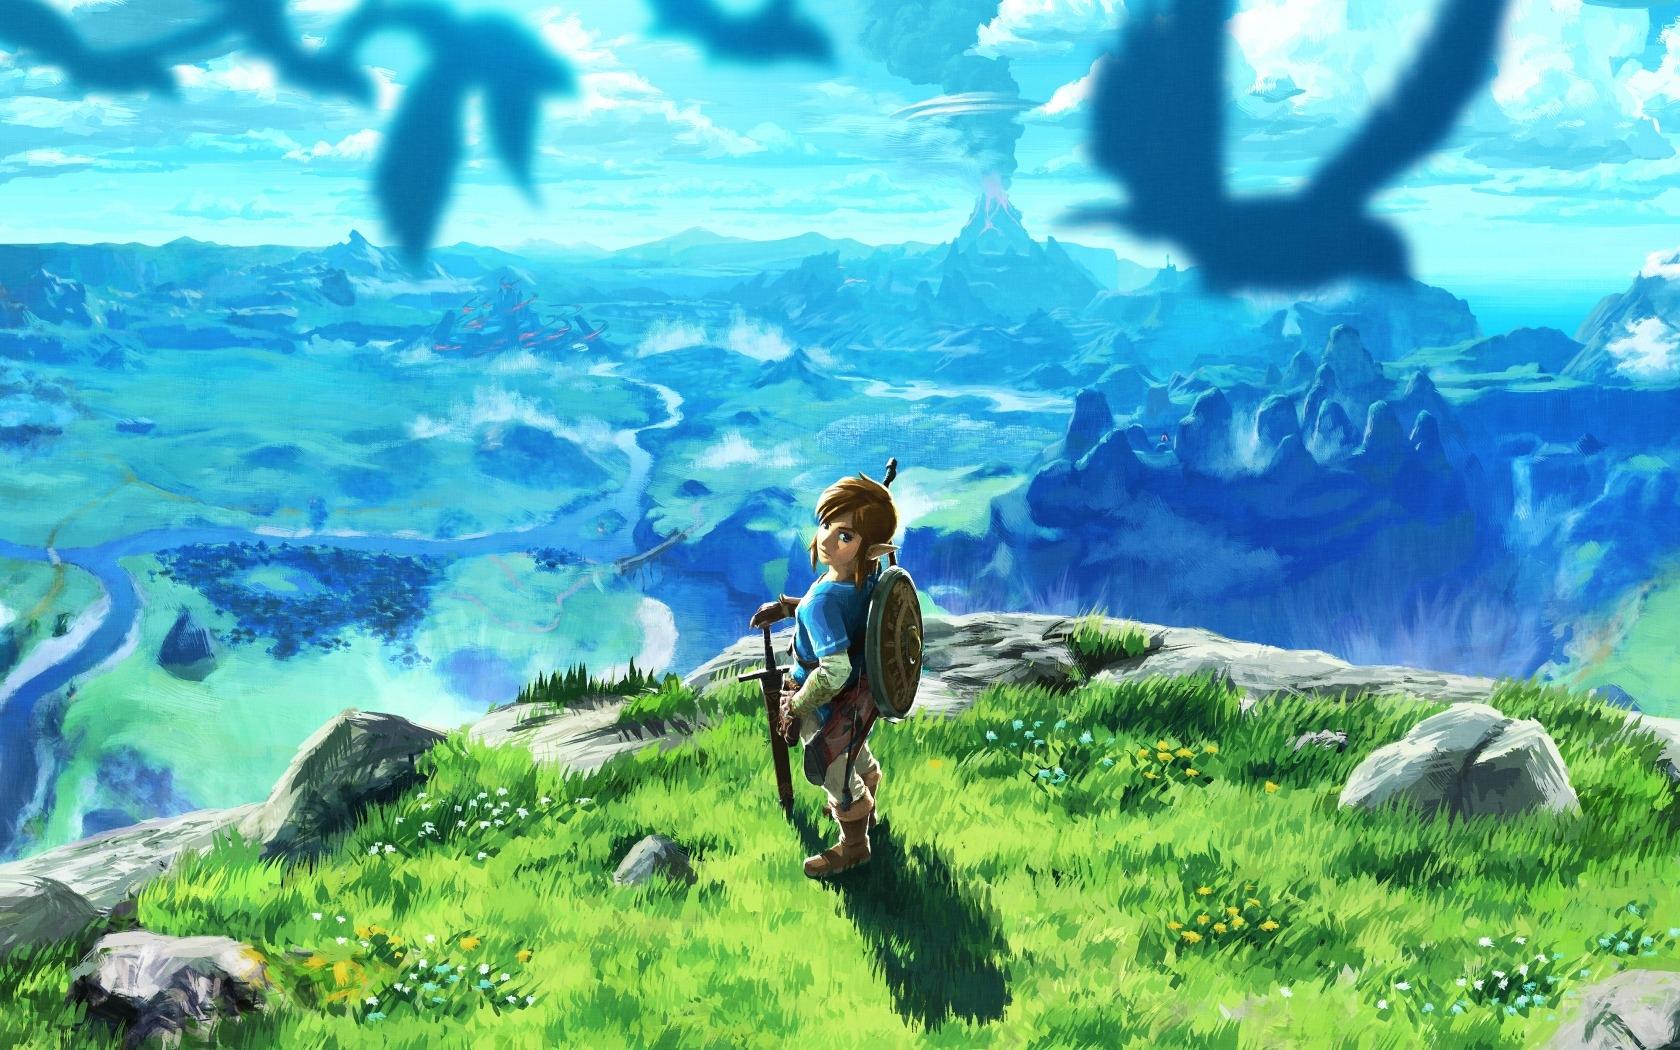 1680 x 1050 · jpeg - Download 1680x1050 The Legend Of Zelda: Breath Of The Wild, Link ...